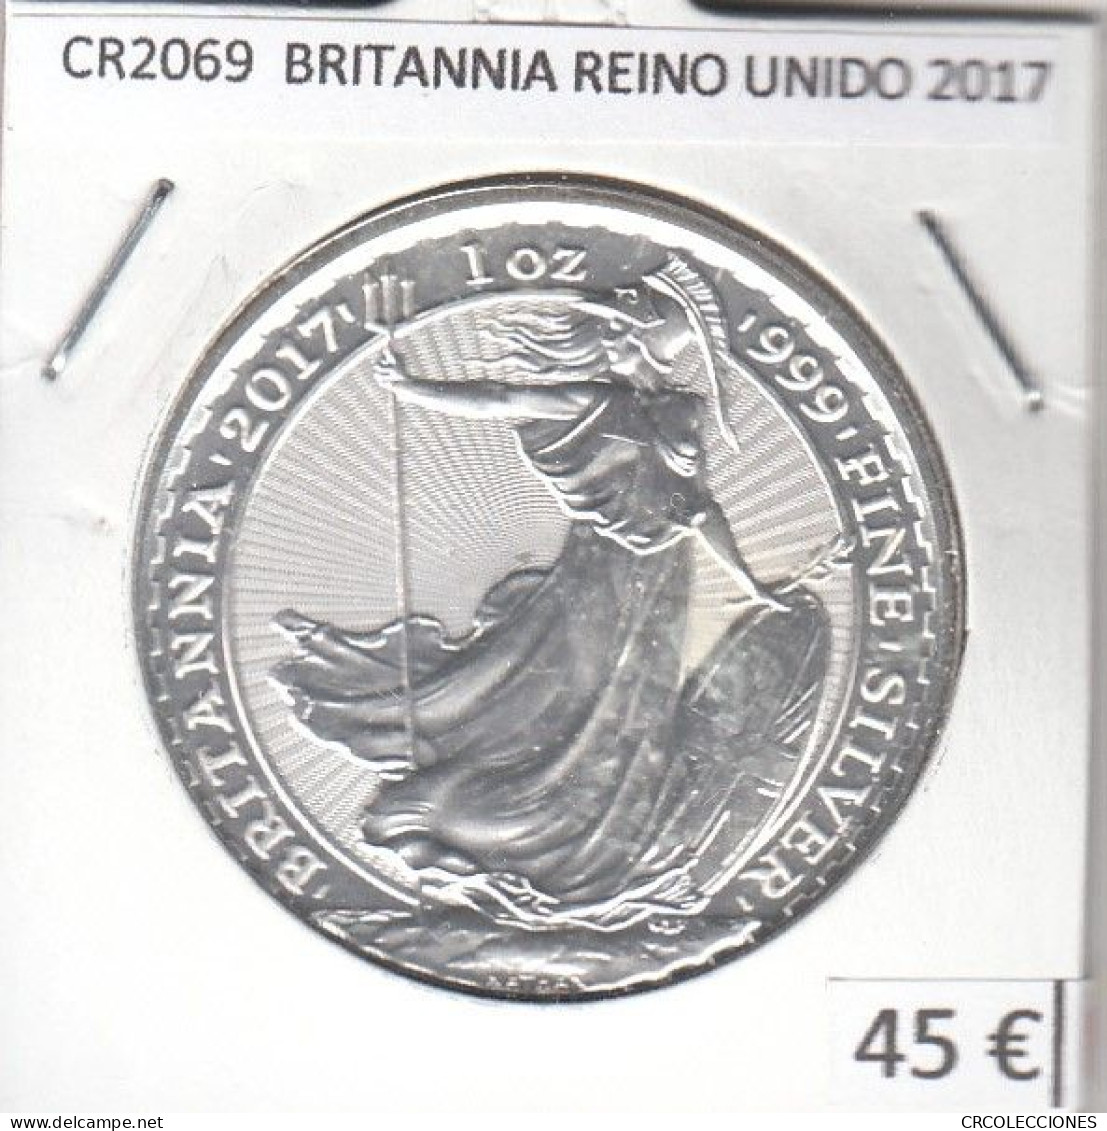 CR2069 ONZA BRITANNIA REINO UNIDO 2017 PLATA - Colecciones